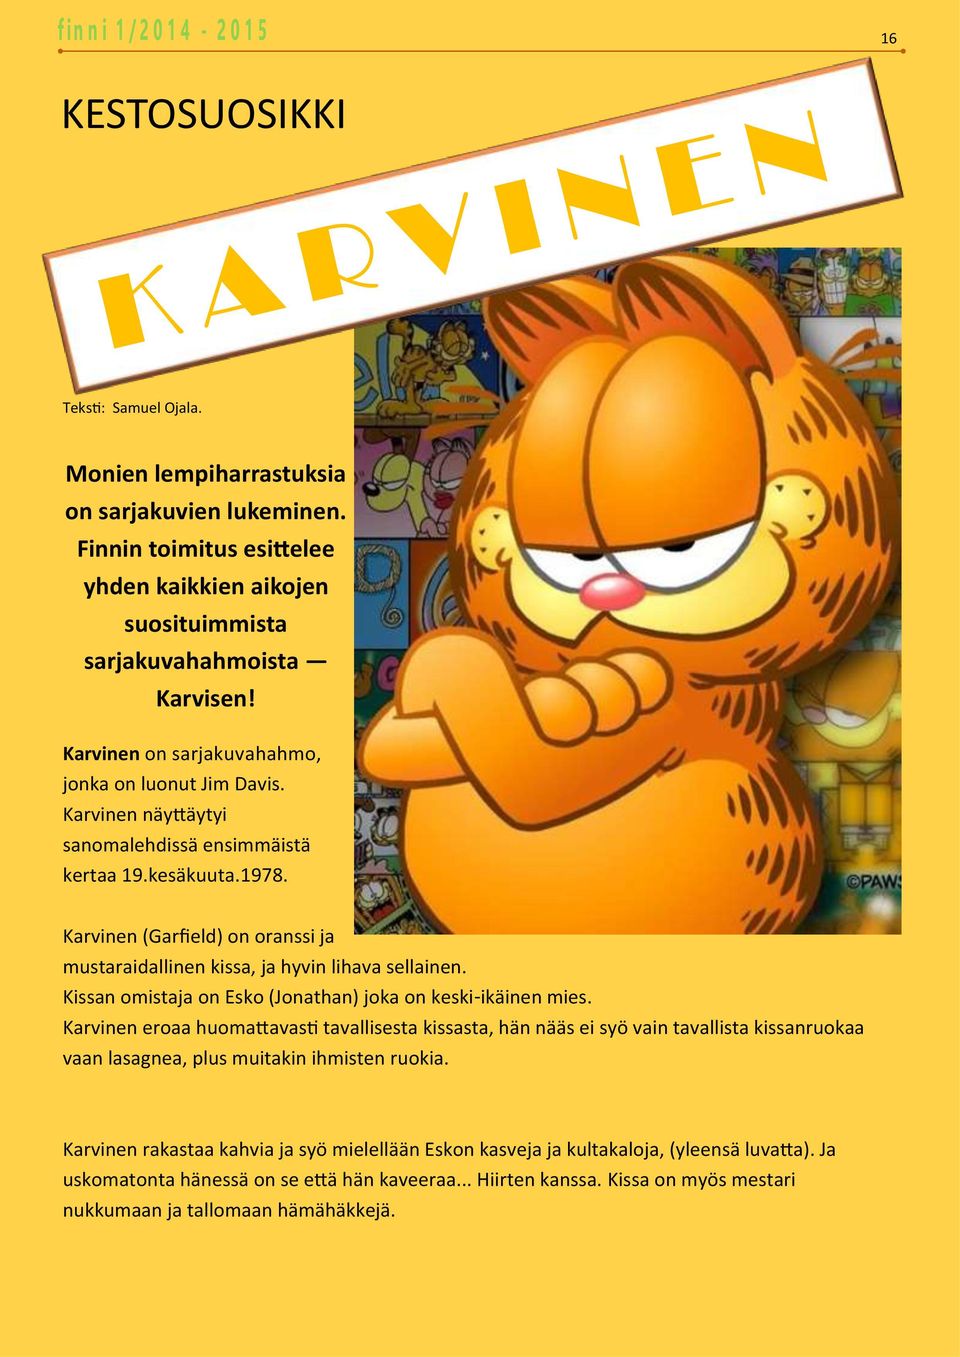 Karvinen (Garfield) on oranssi ja mustaraidallinen kissa, ja hyvin lihava sellainen. Kissan omistaja on Esko (Jonathan) joka on keski-ikäinen mies.